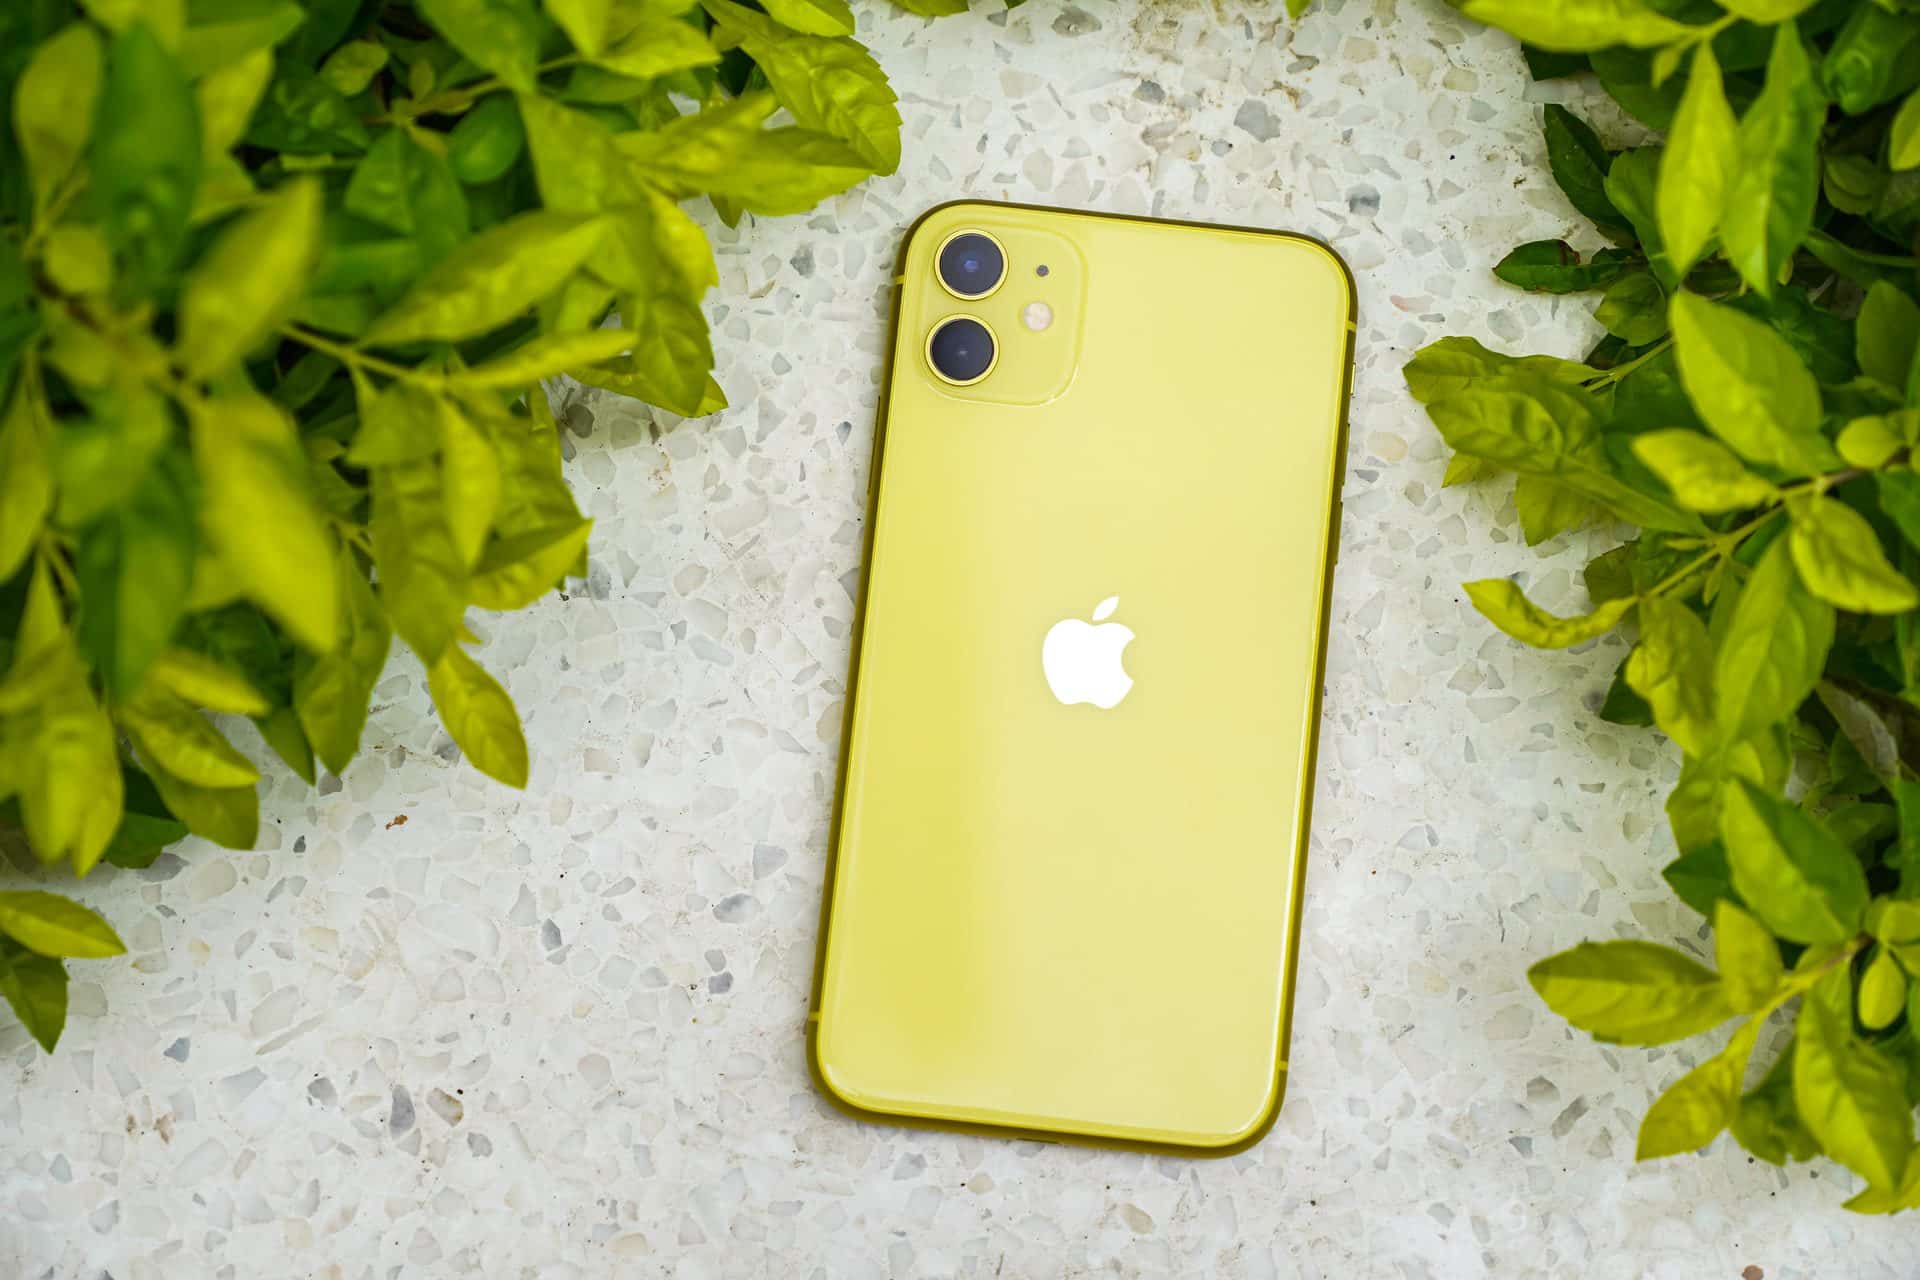 iPhone 11 v žltej farbe položený na mramore v okolí kvetov. Fotka zo zadnej strany